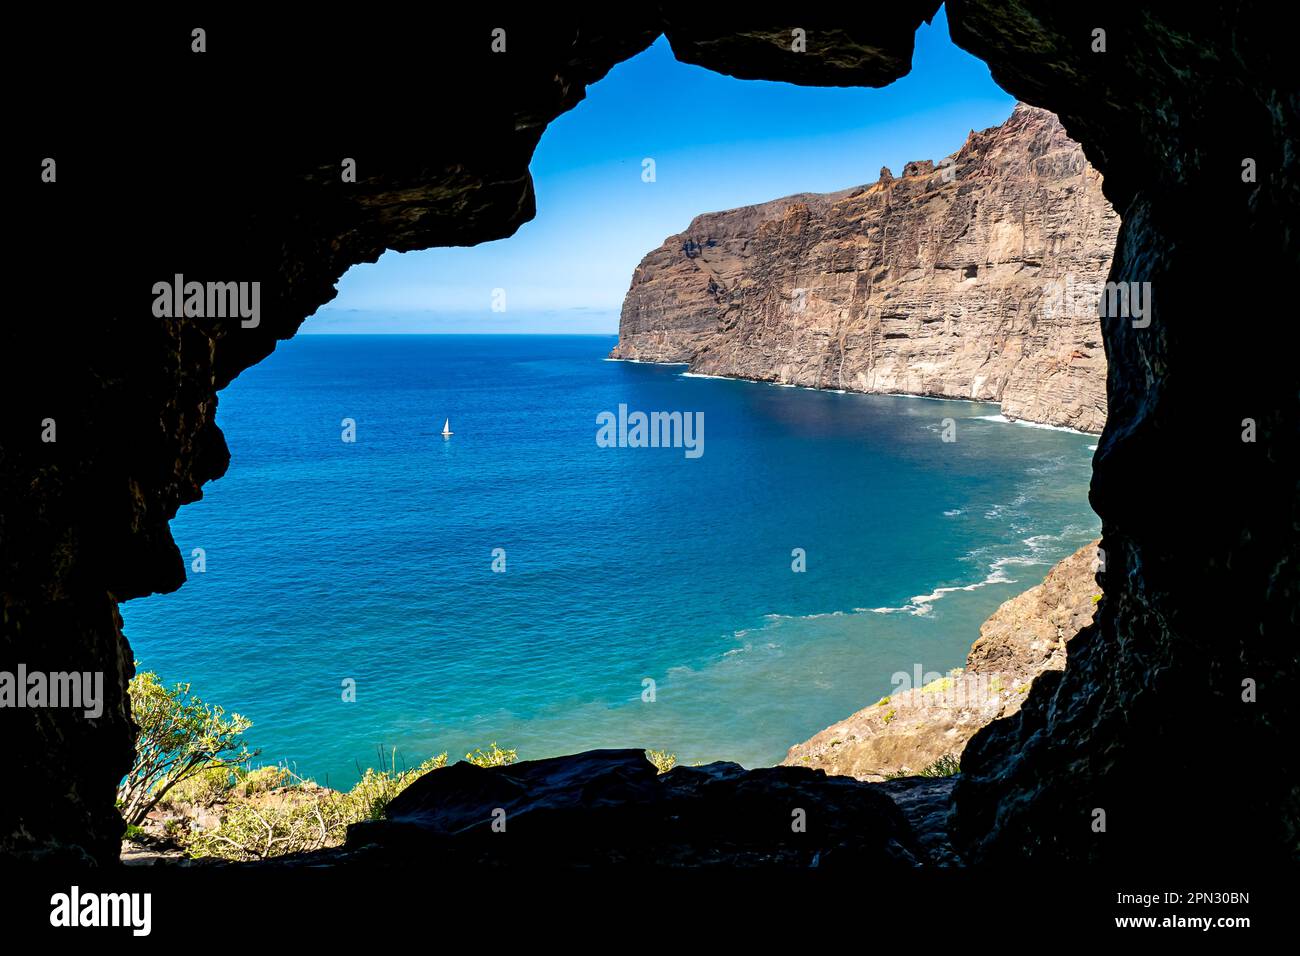 Vue sur les eaux de la baie de Los Gigantes depuis l'entrée d'une petite grotte, avec les imposantes falaises d'Acantilados de Los Gigantes dominant la mer. Banque D'Images